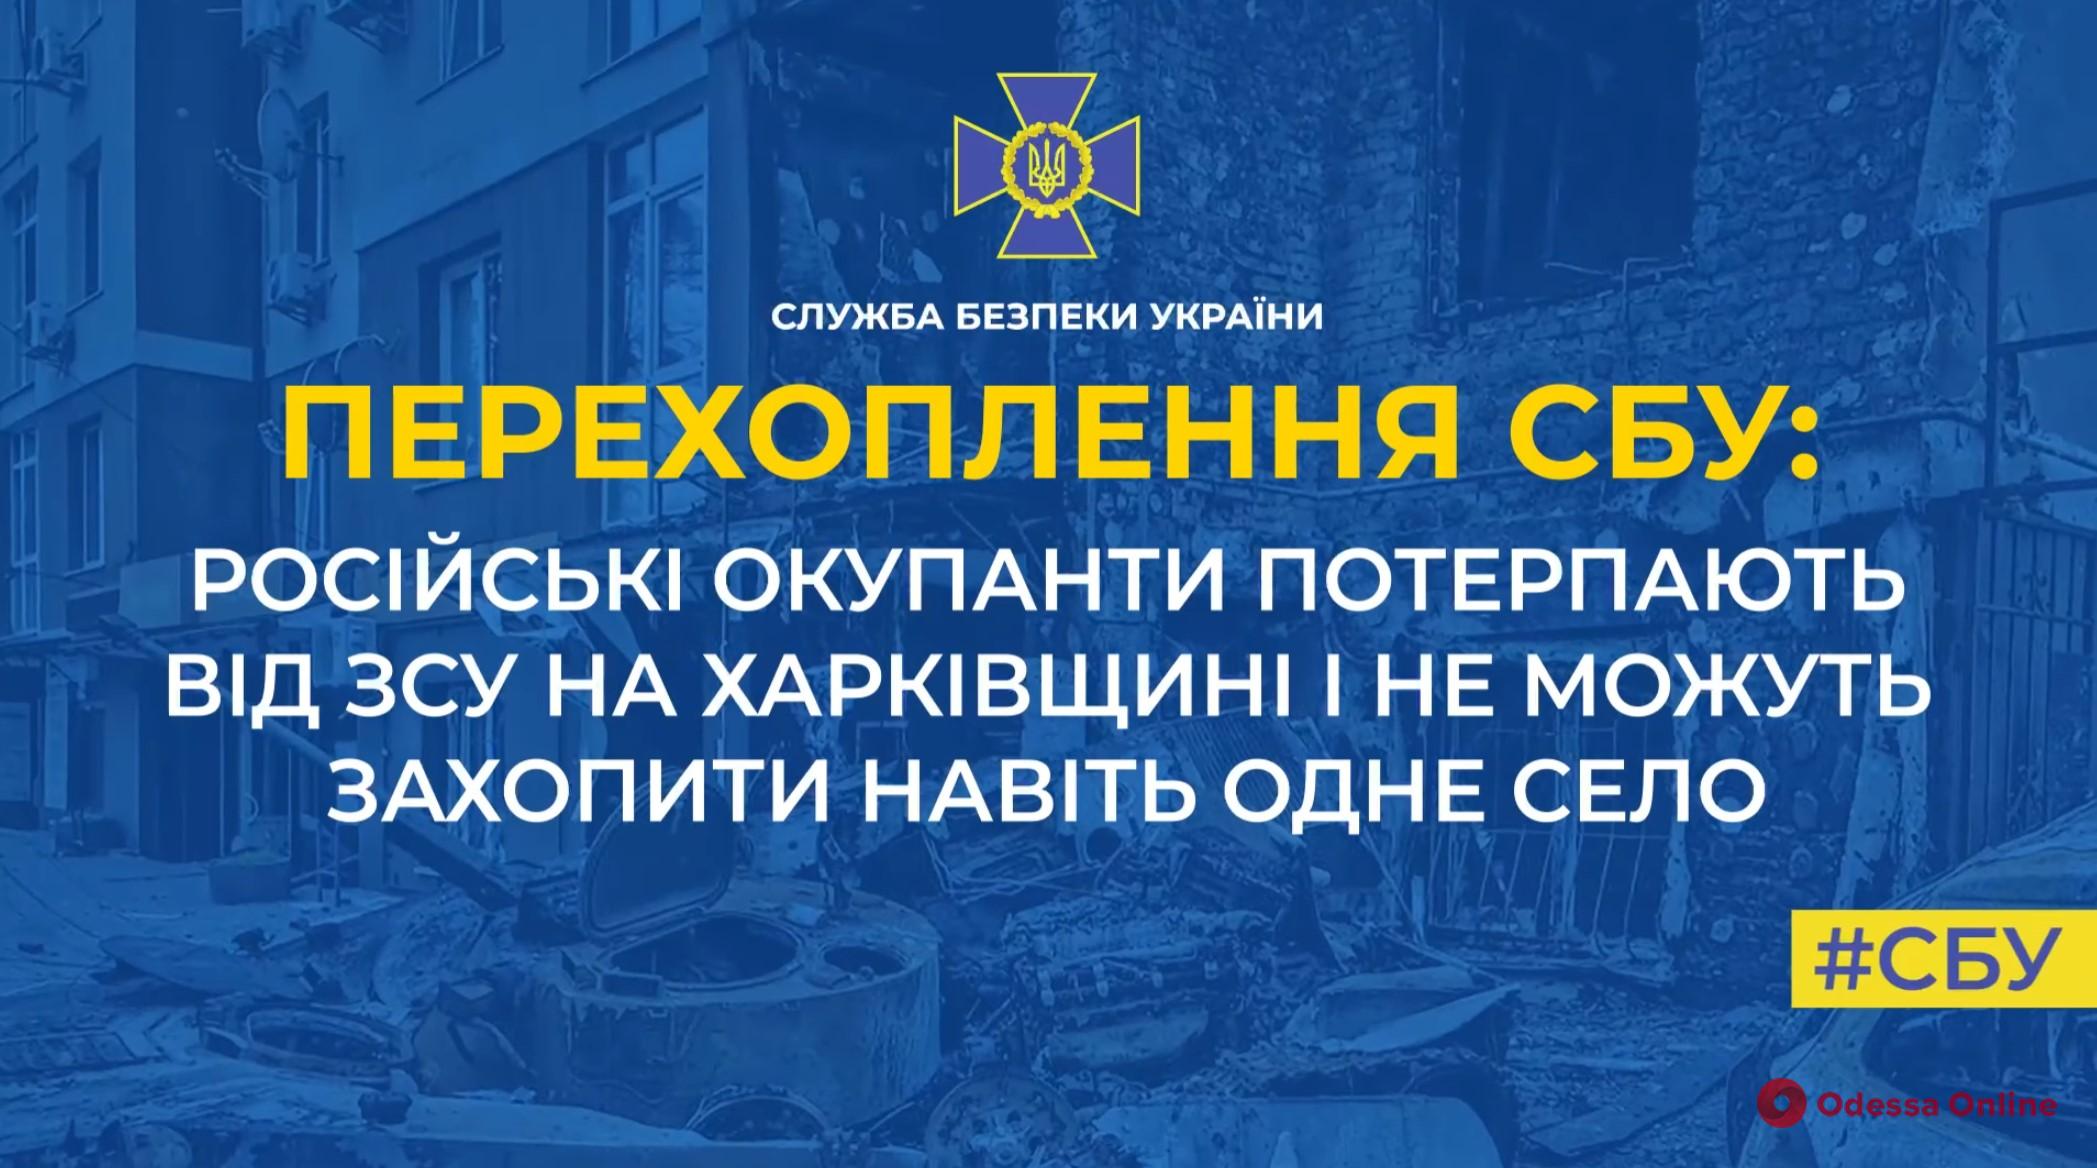 СБУ: на Харківщині окупанти не можуть захопити навіть одне село (аудіоперехоплення)